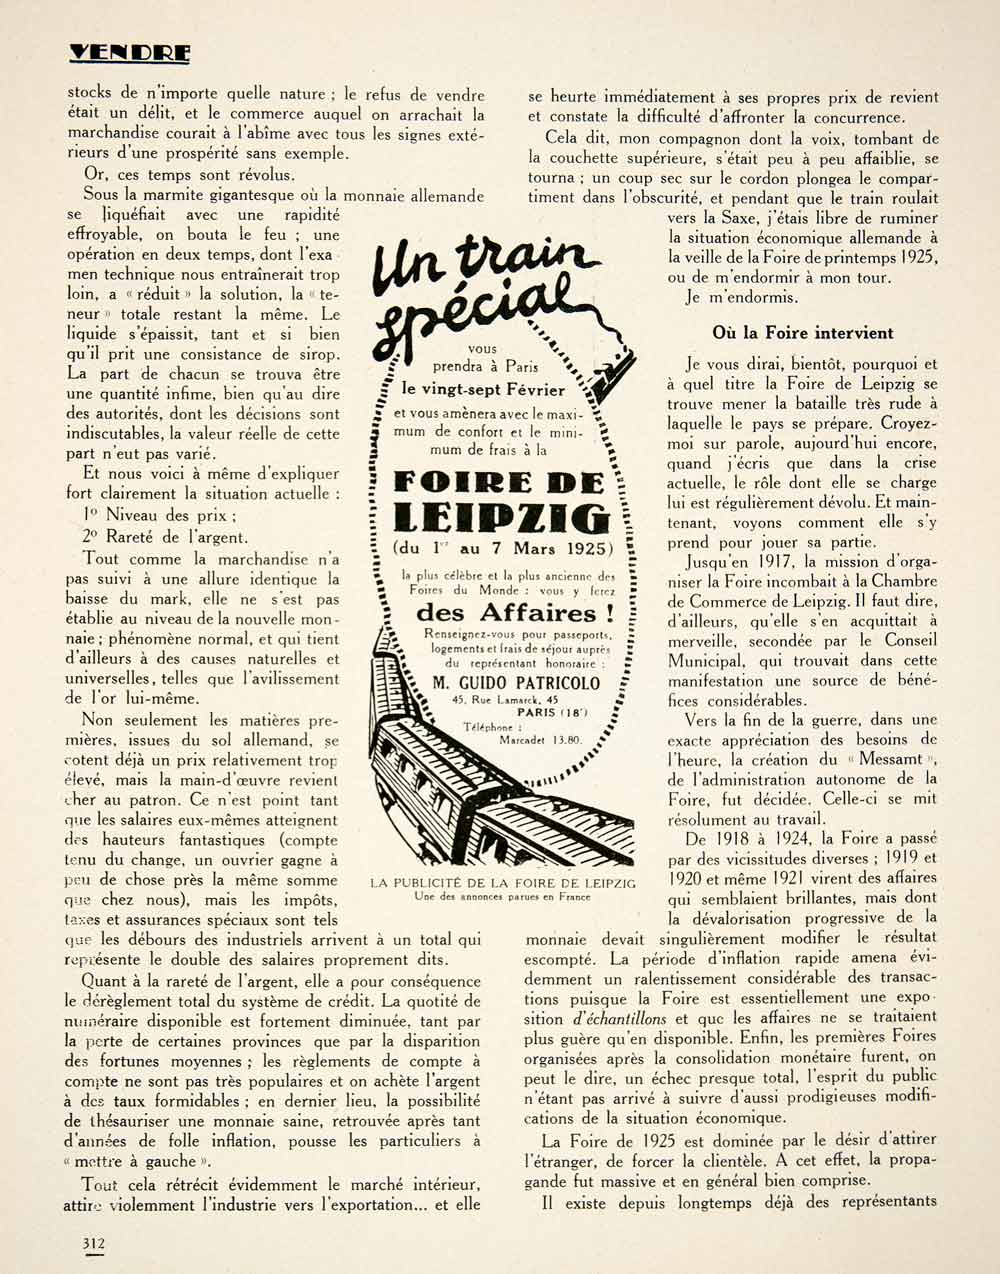 1925 Article Foire Leipzig Fair A Kaminker Lauchhammer-Rheinmetall VENA2